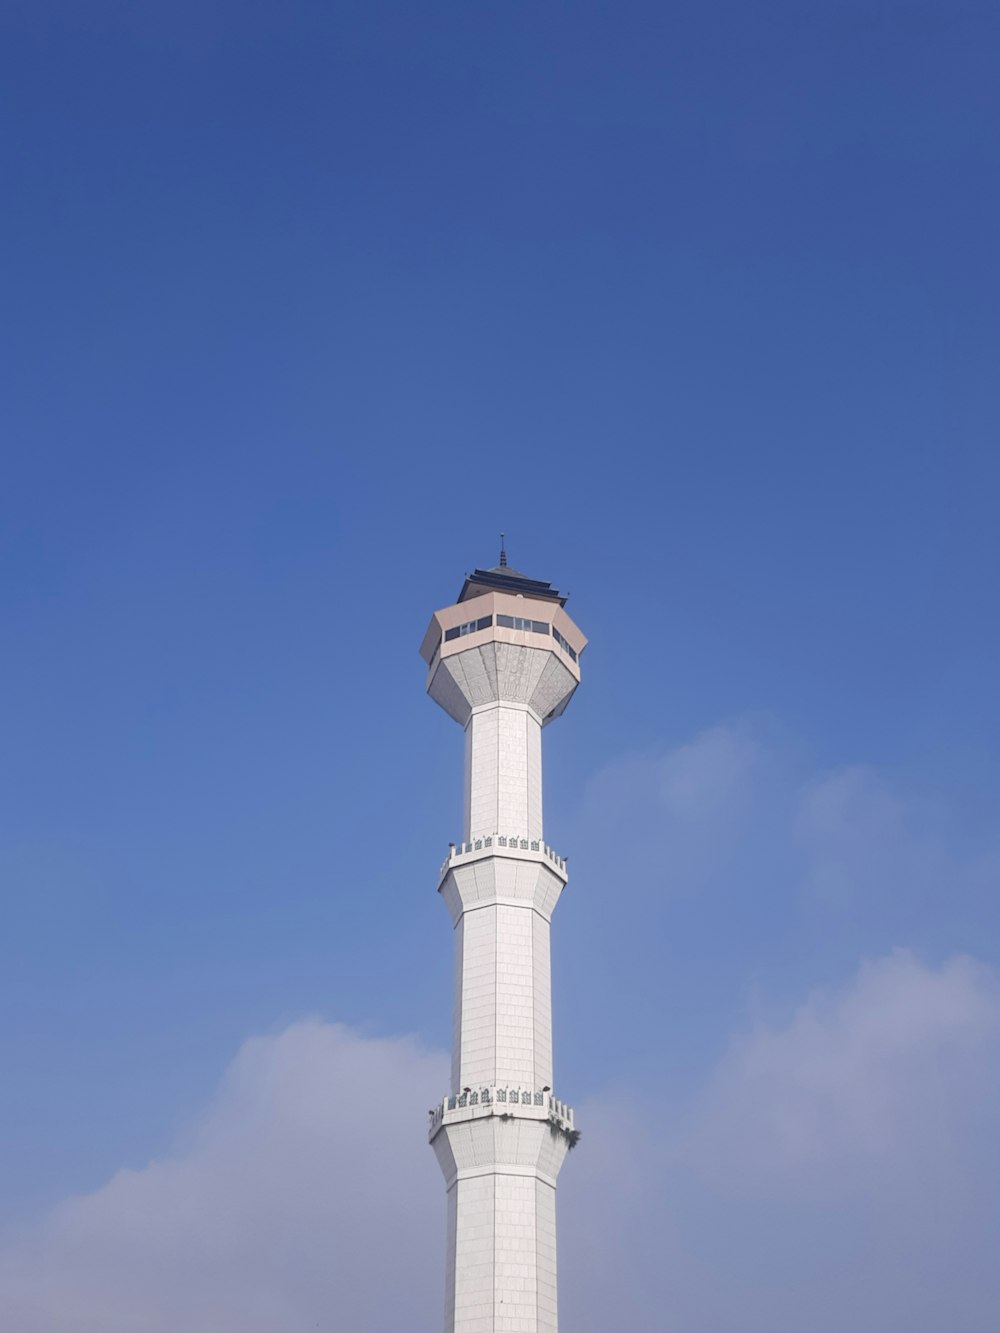 꼭대기에 시계가있는 높은 흰색 탑